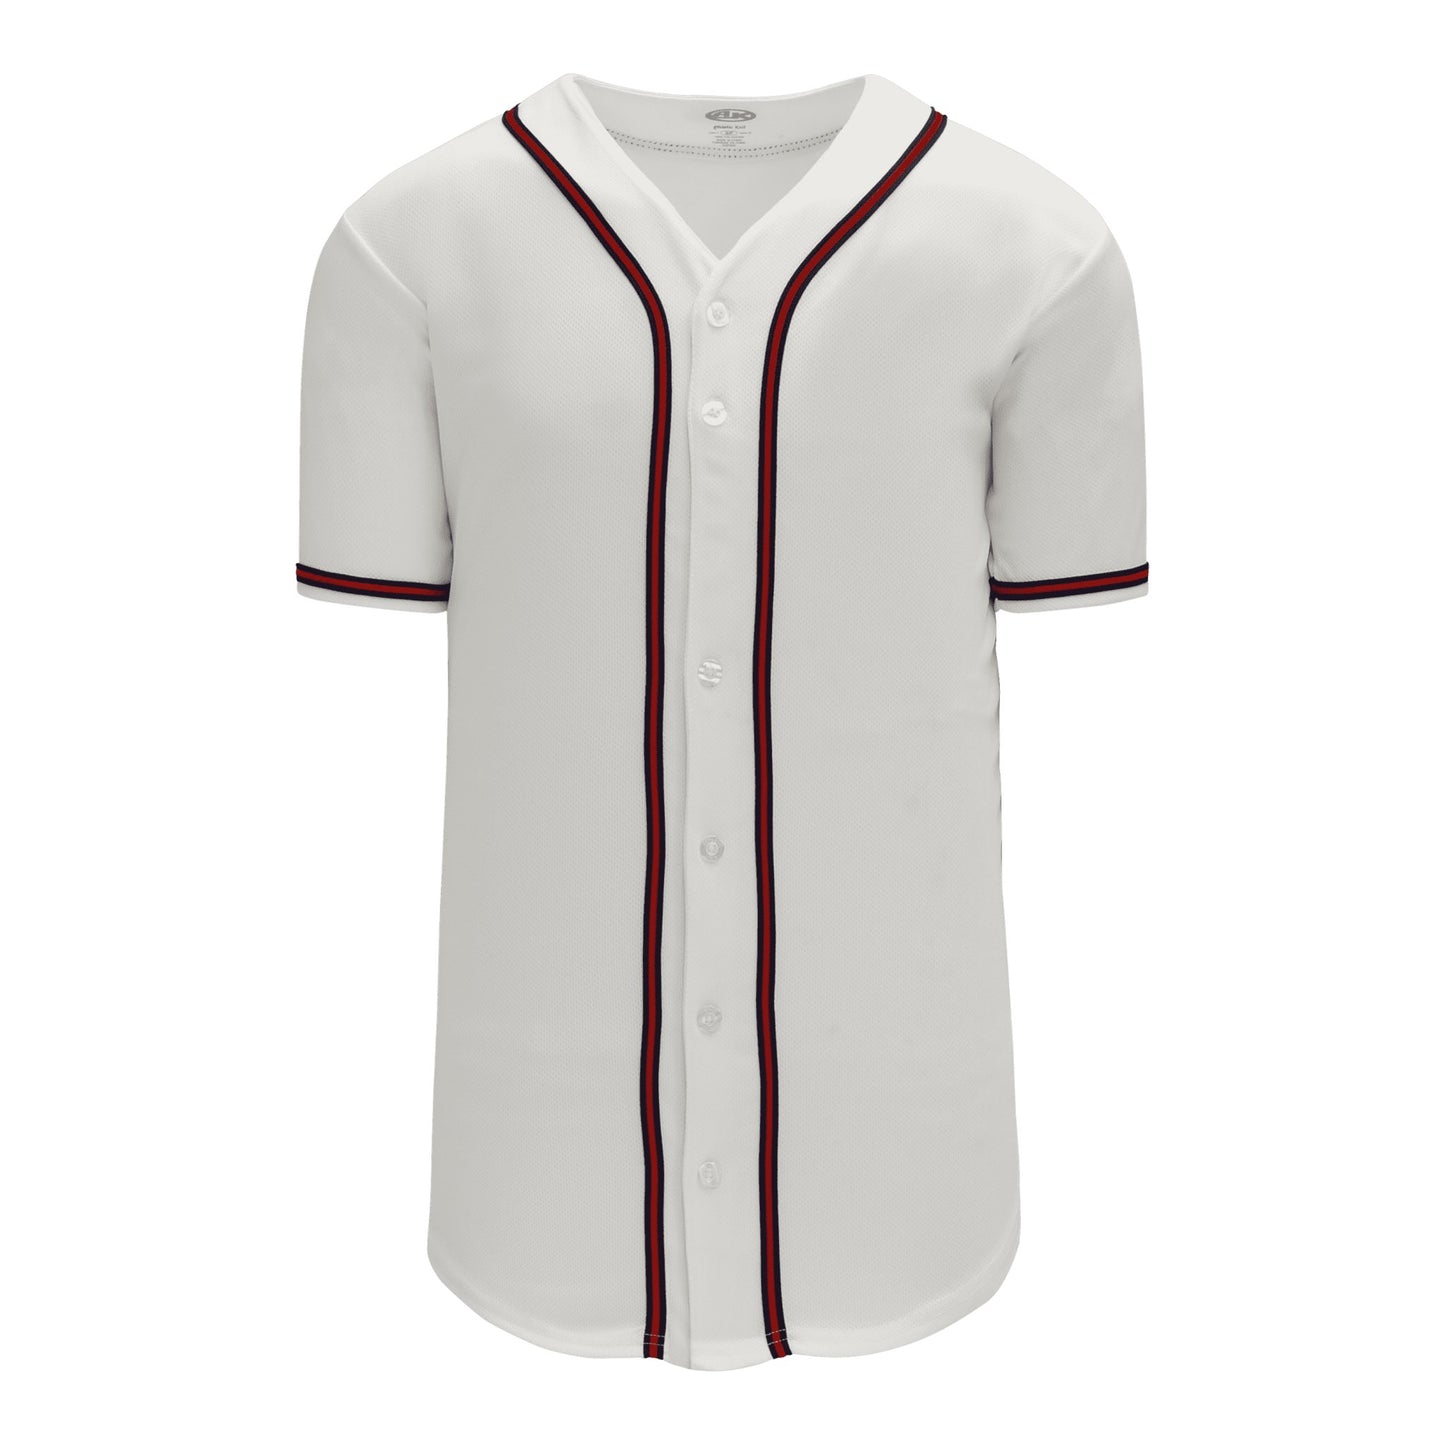 Full Button Baseball Jerseys: Pro Team Patterns, Youth Cut